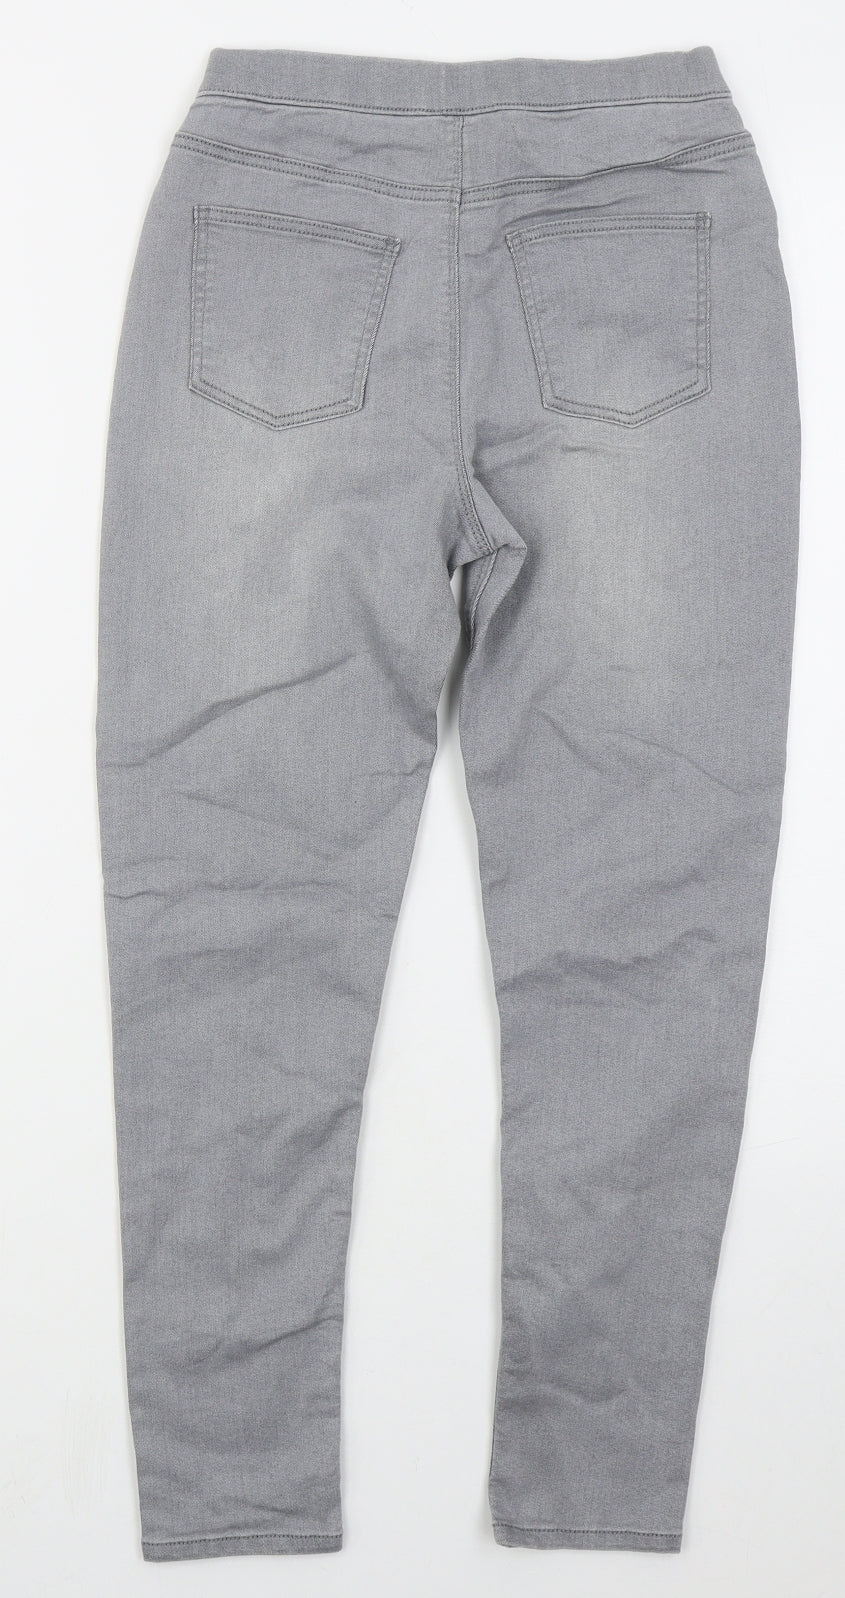 Matalan Girls Grey  Cotton Jegging Jeans Size 11 Years  Regular